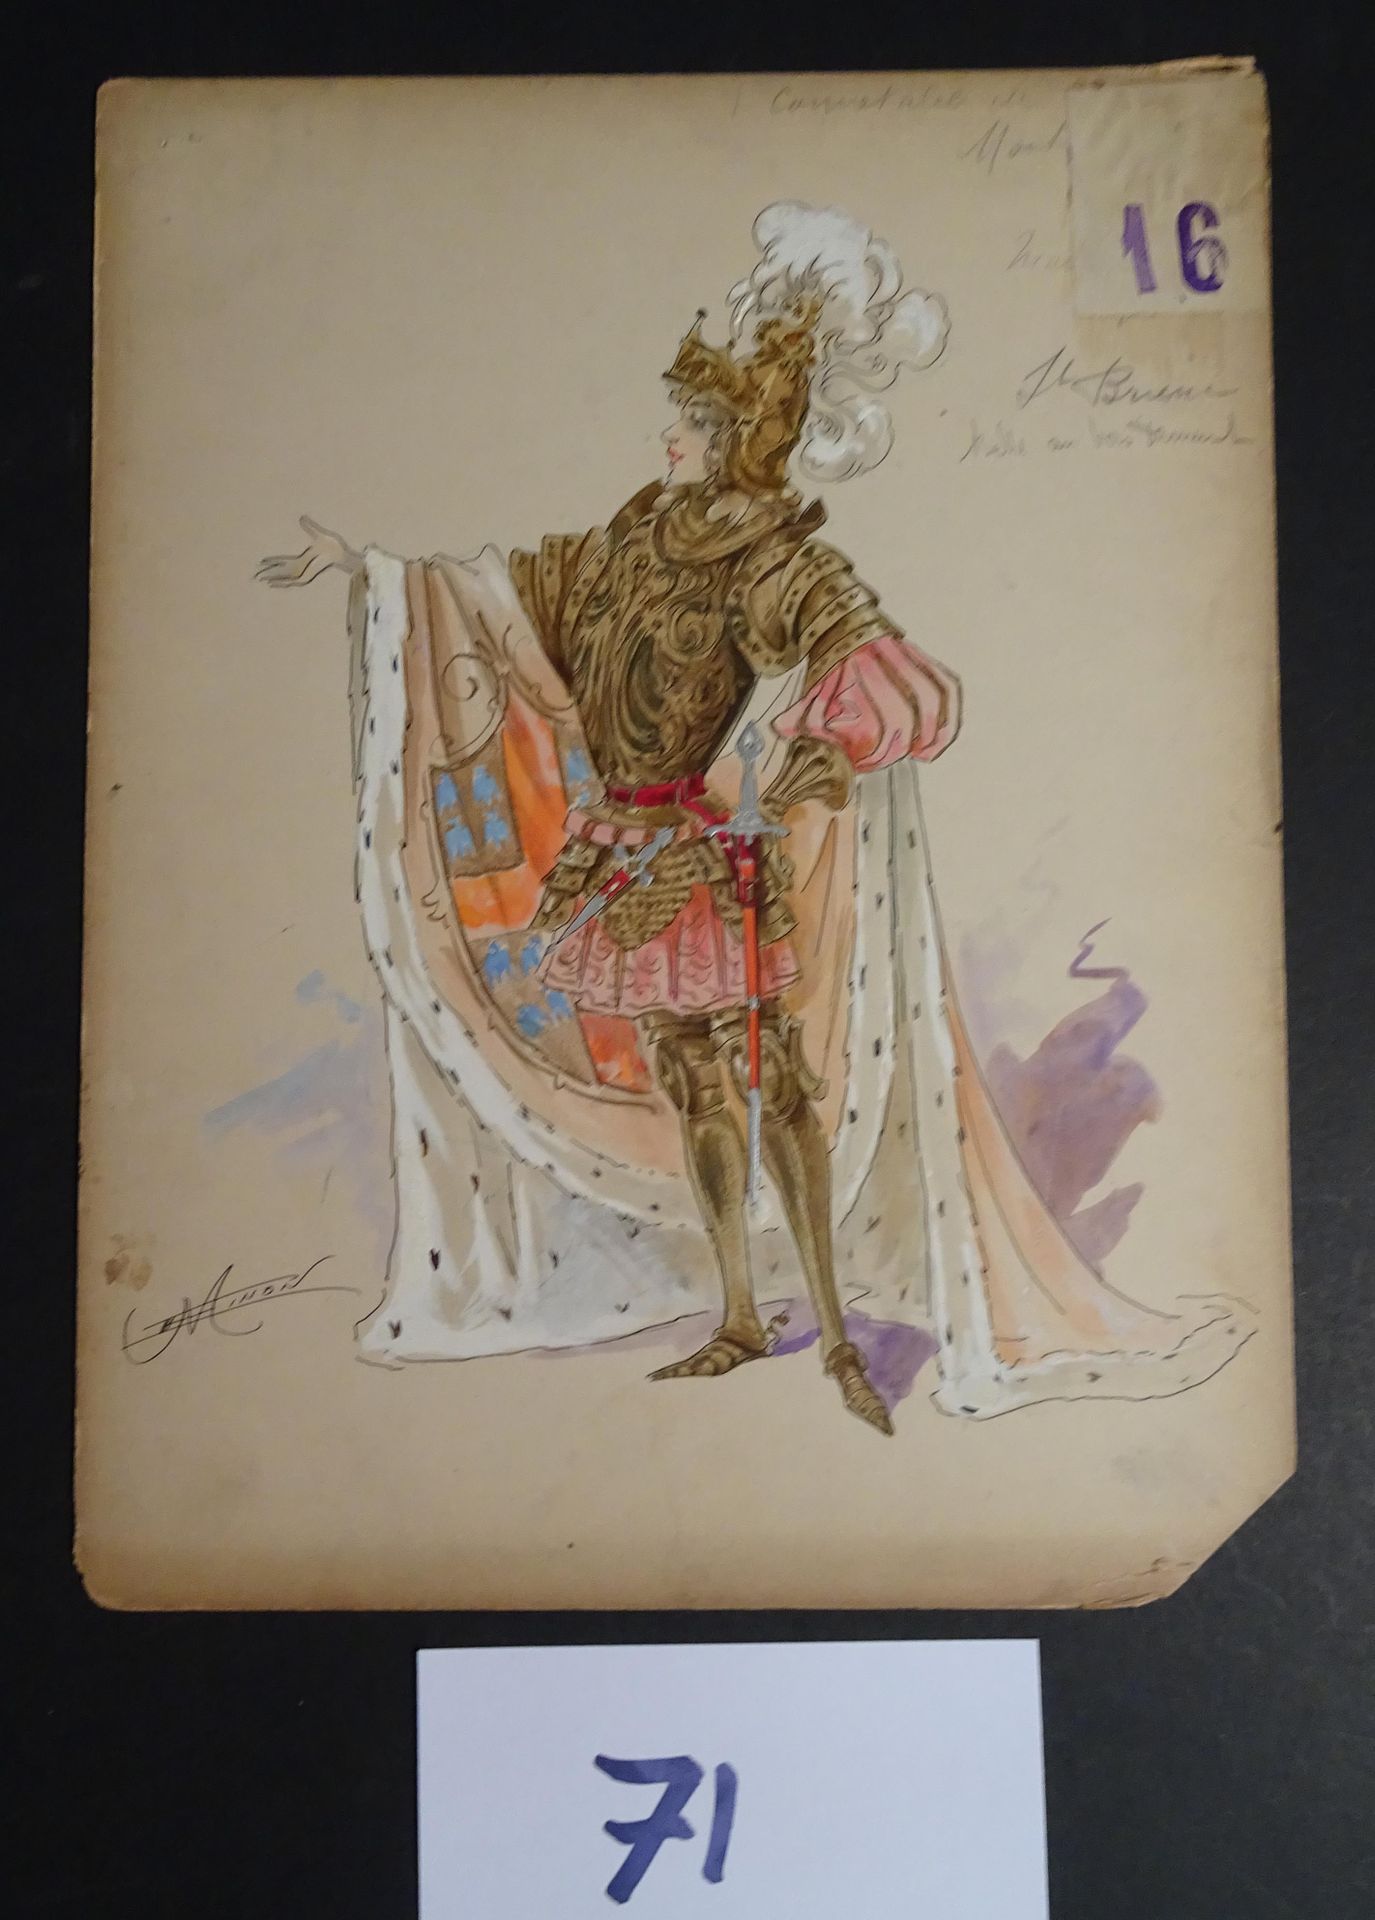 MINON MINON

"Le chevalier" c.1880 für eine Revue "Belle au bois dormant" (Dornr&hellip;